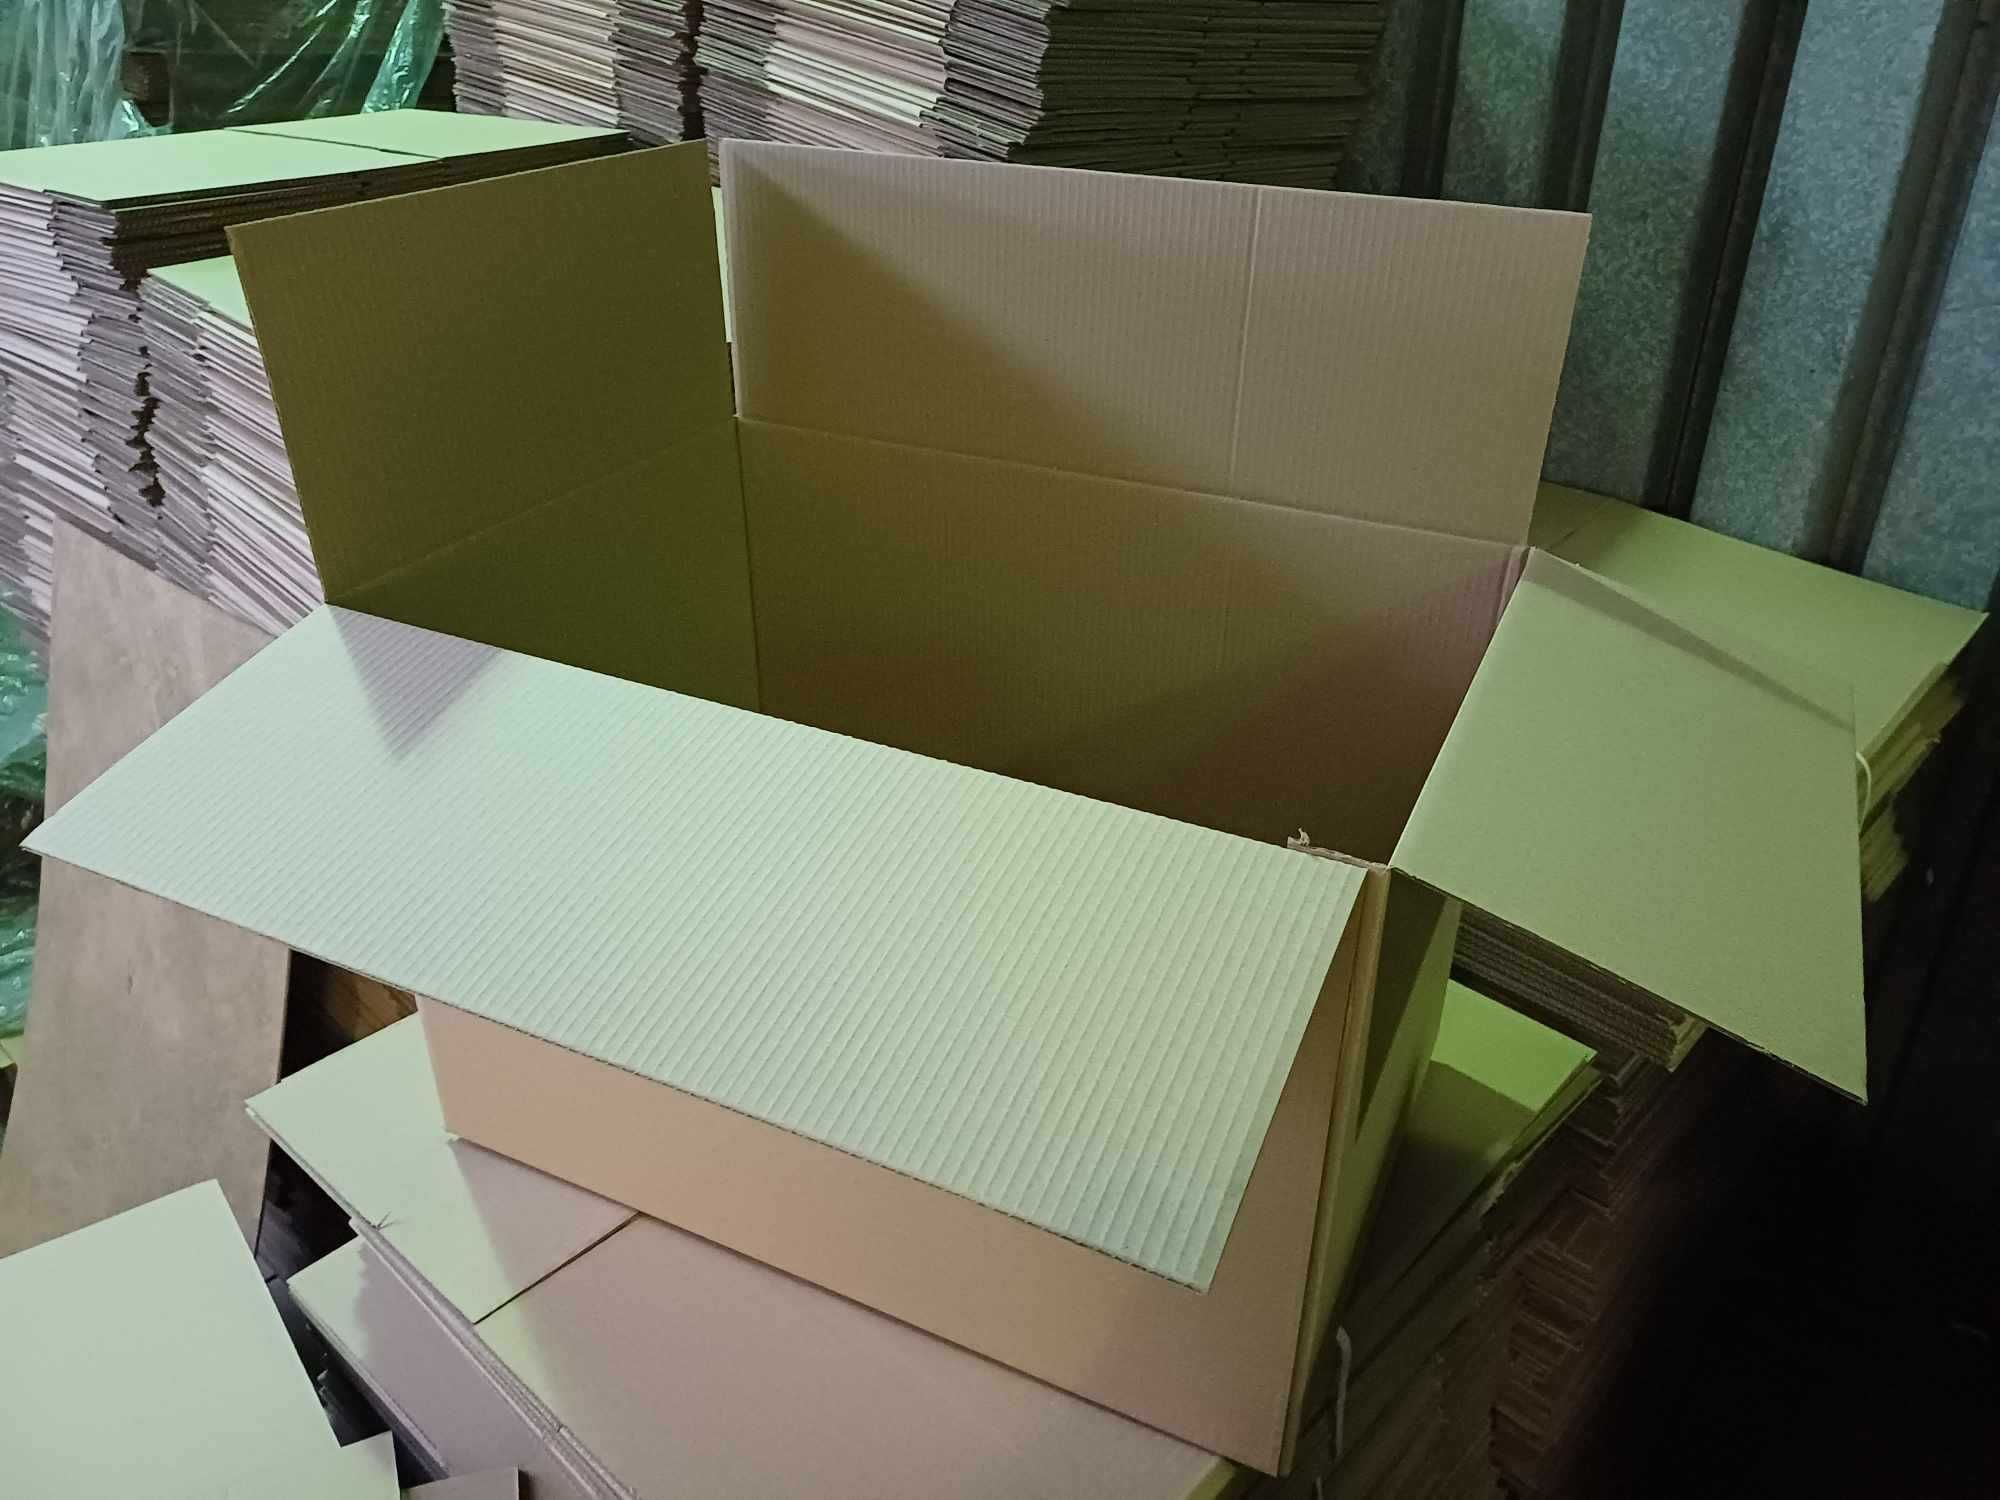 Karton 40 x 60 x 40 cm pudełko klapowe duży karton do przeprowadzki